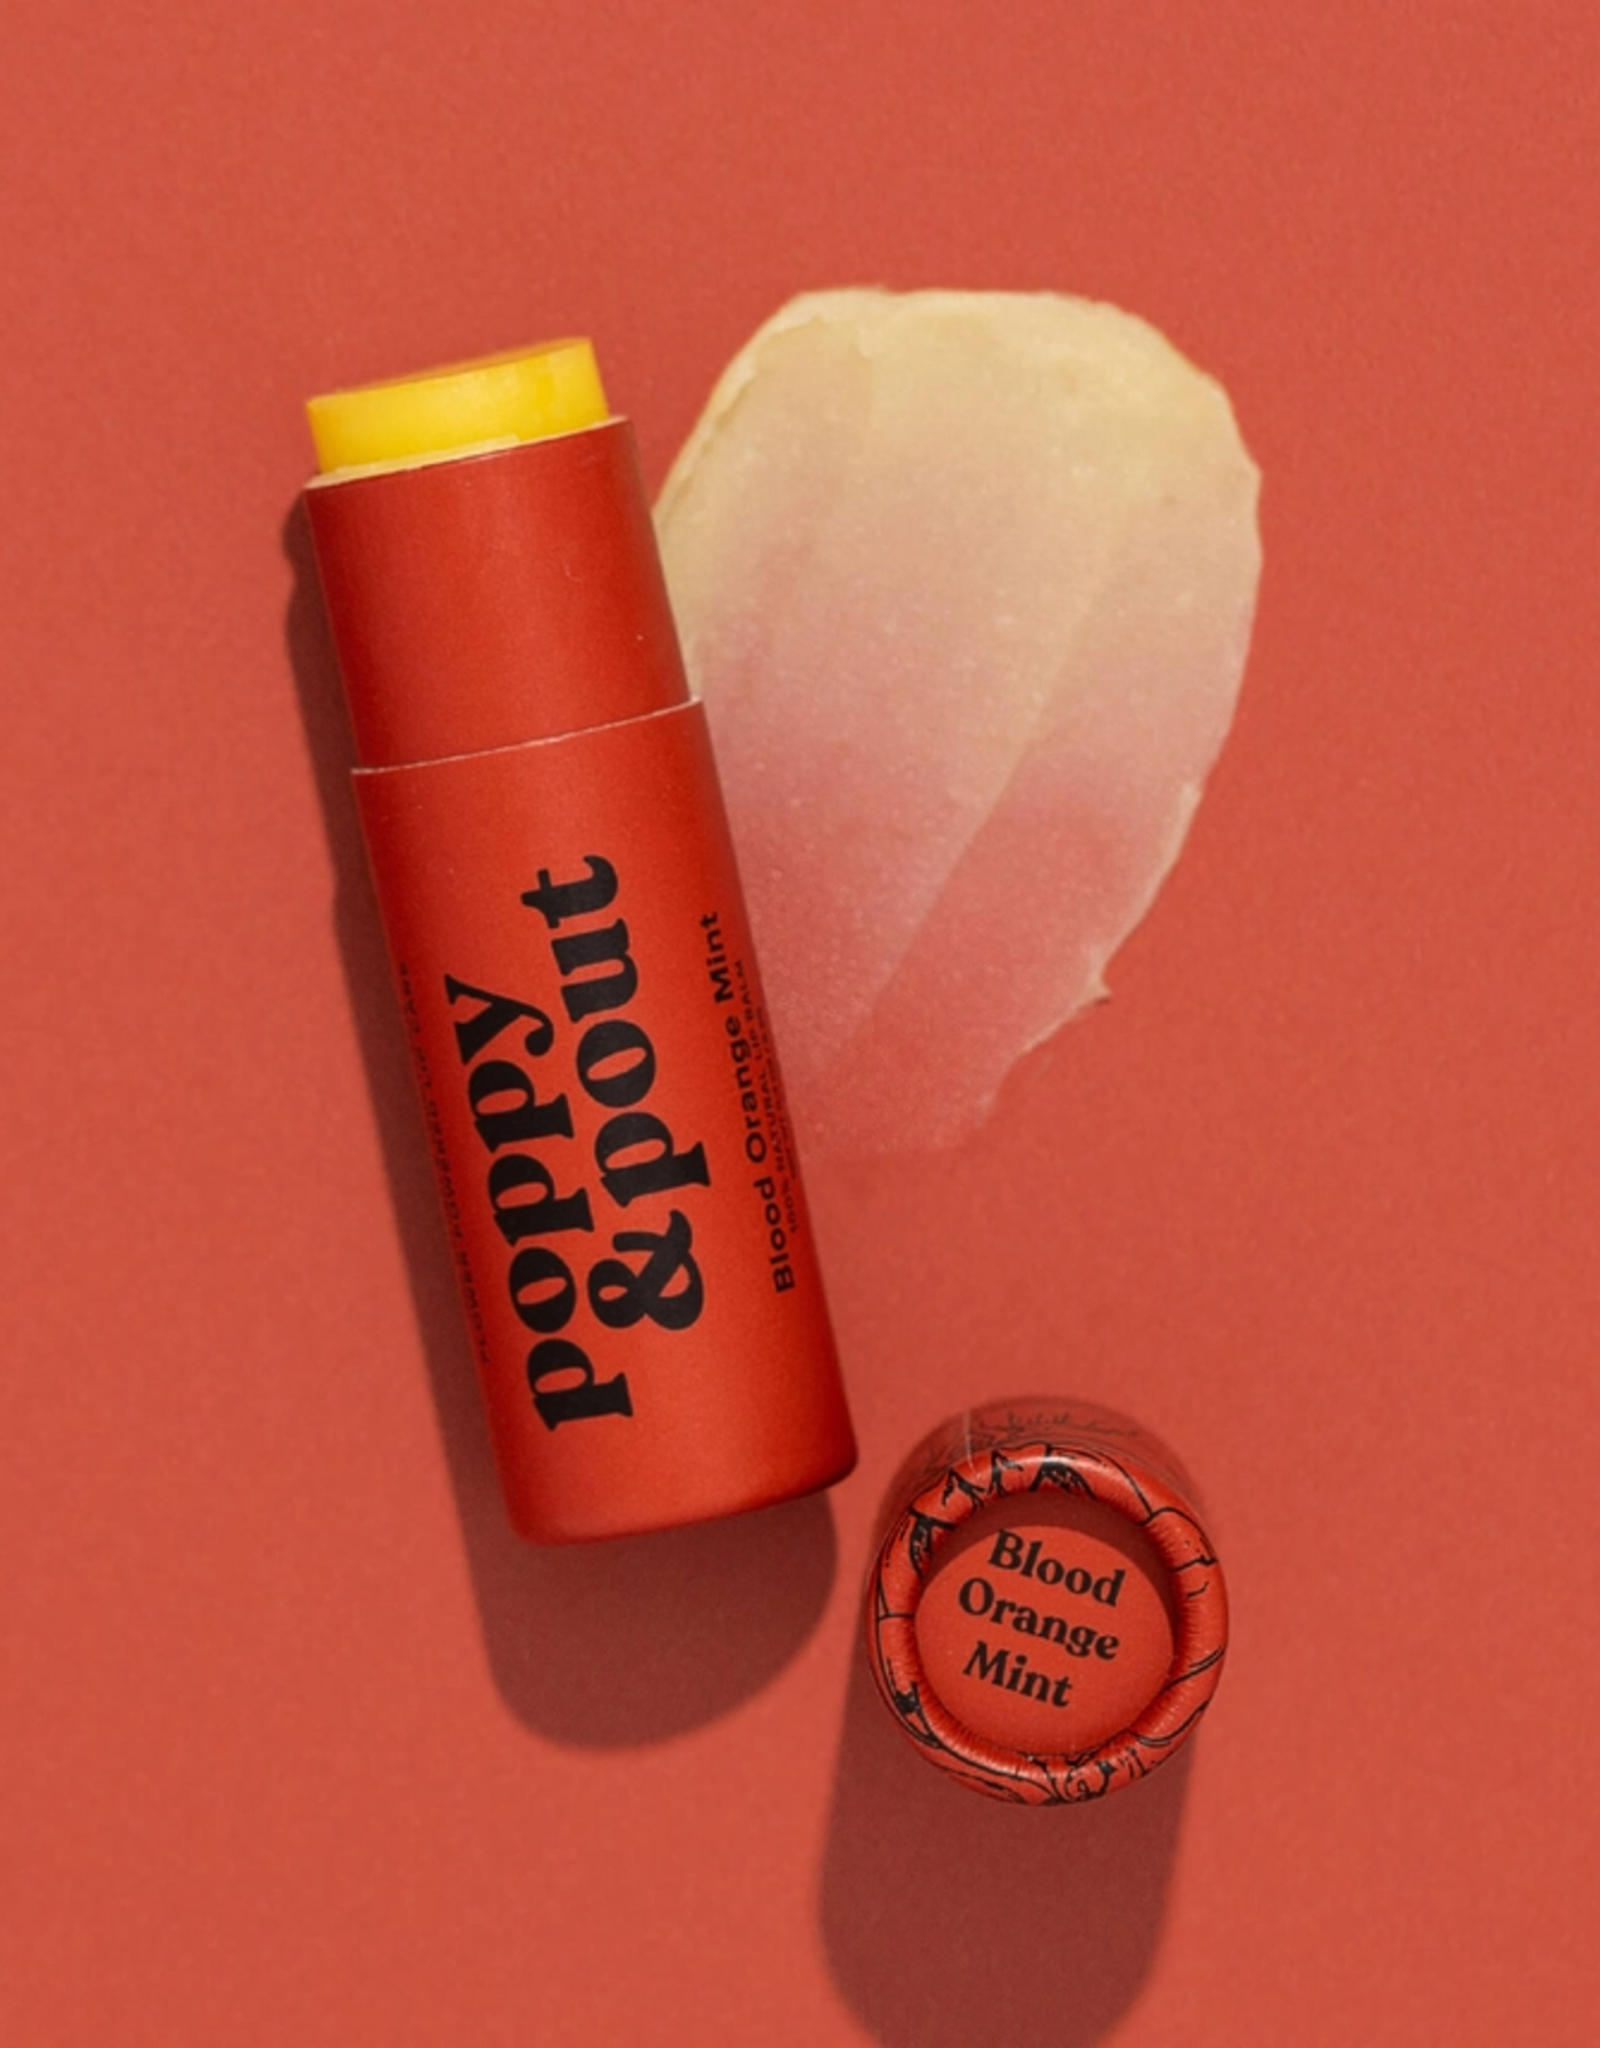 Poppy & Pout Lip Balm, Blood Orange Mint